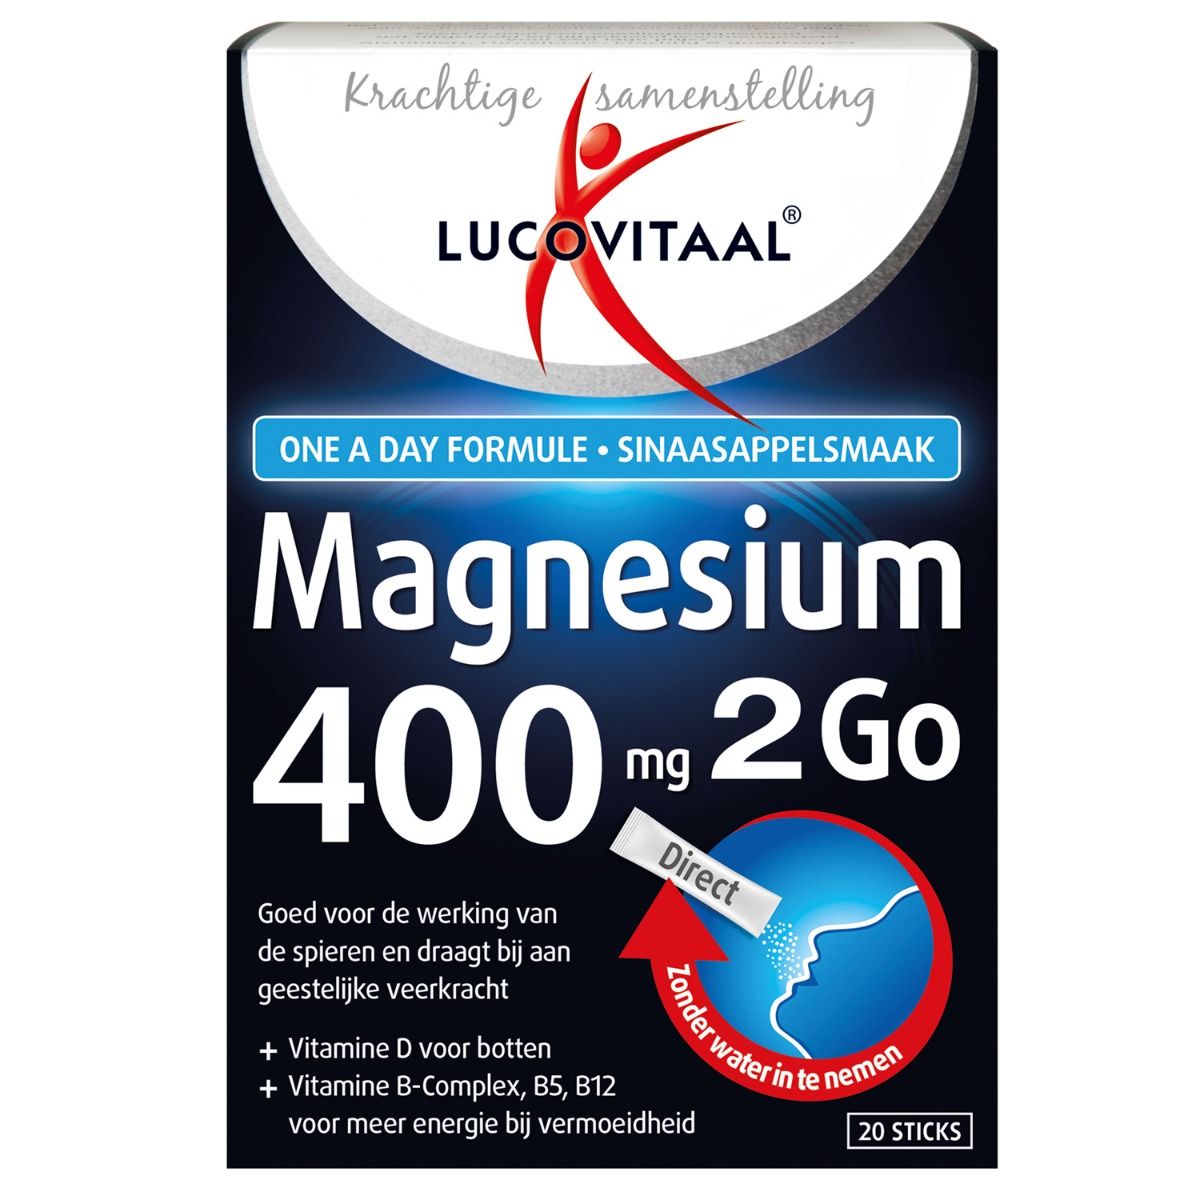 Magnesium Sticks Krachtig & Goedkoop!